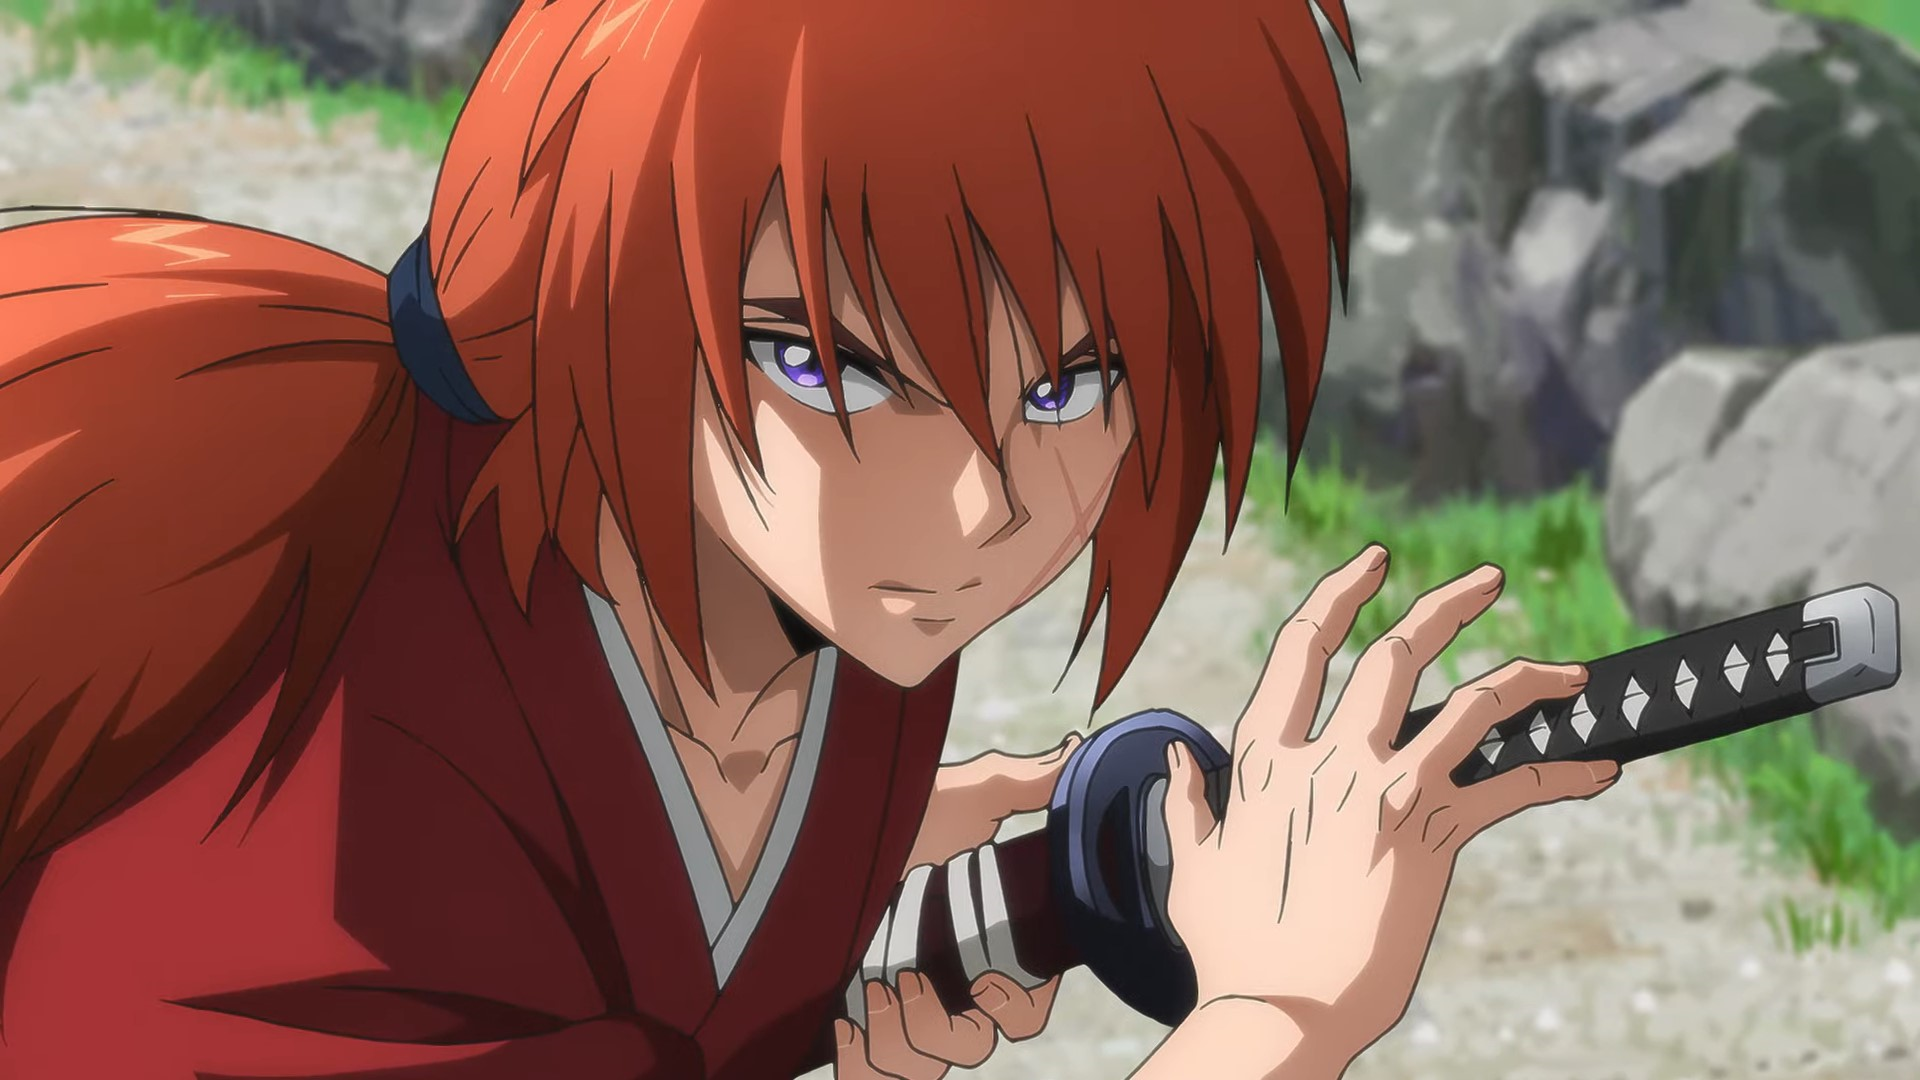 Prime Video: Rurouni Kenshin